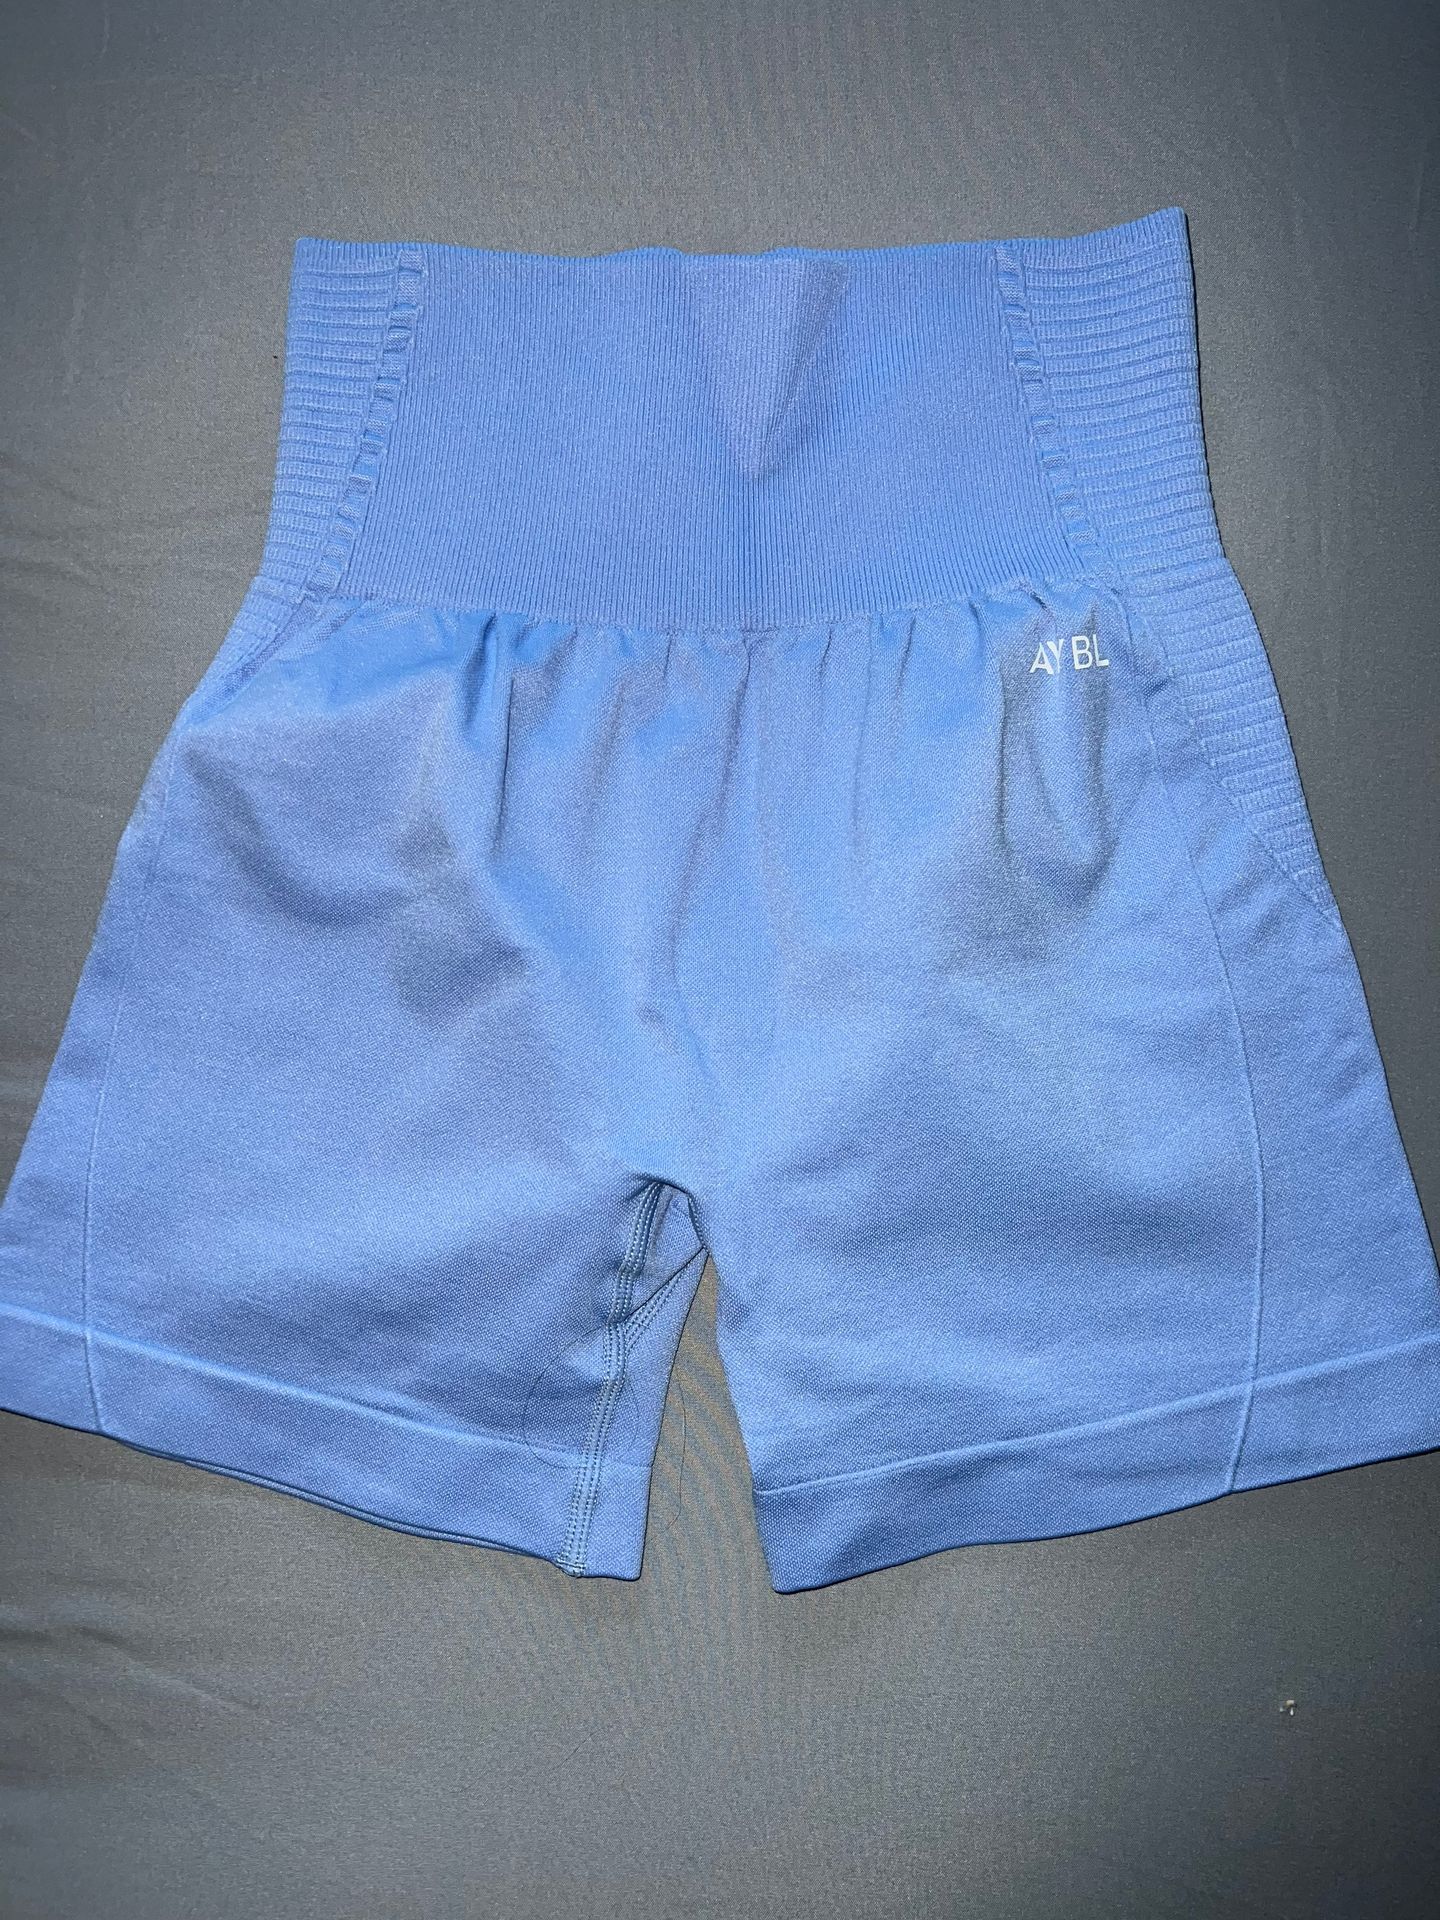 AYBL Shorts - $22 - From Brooke